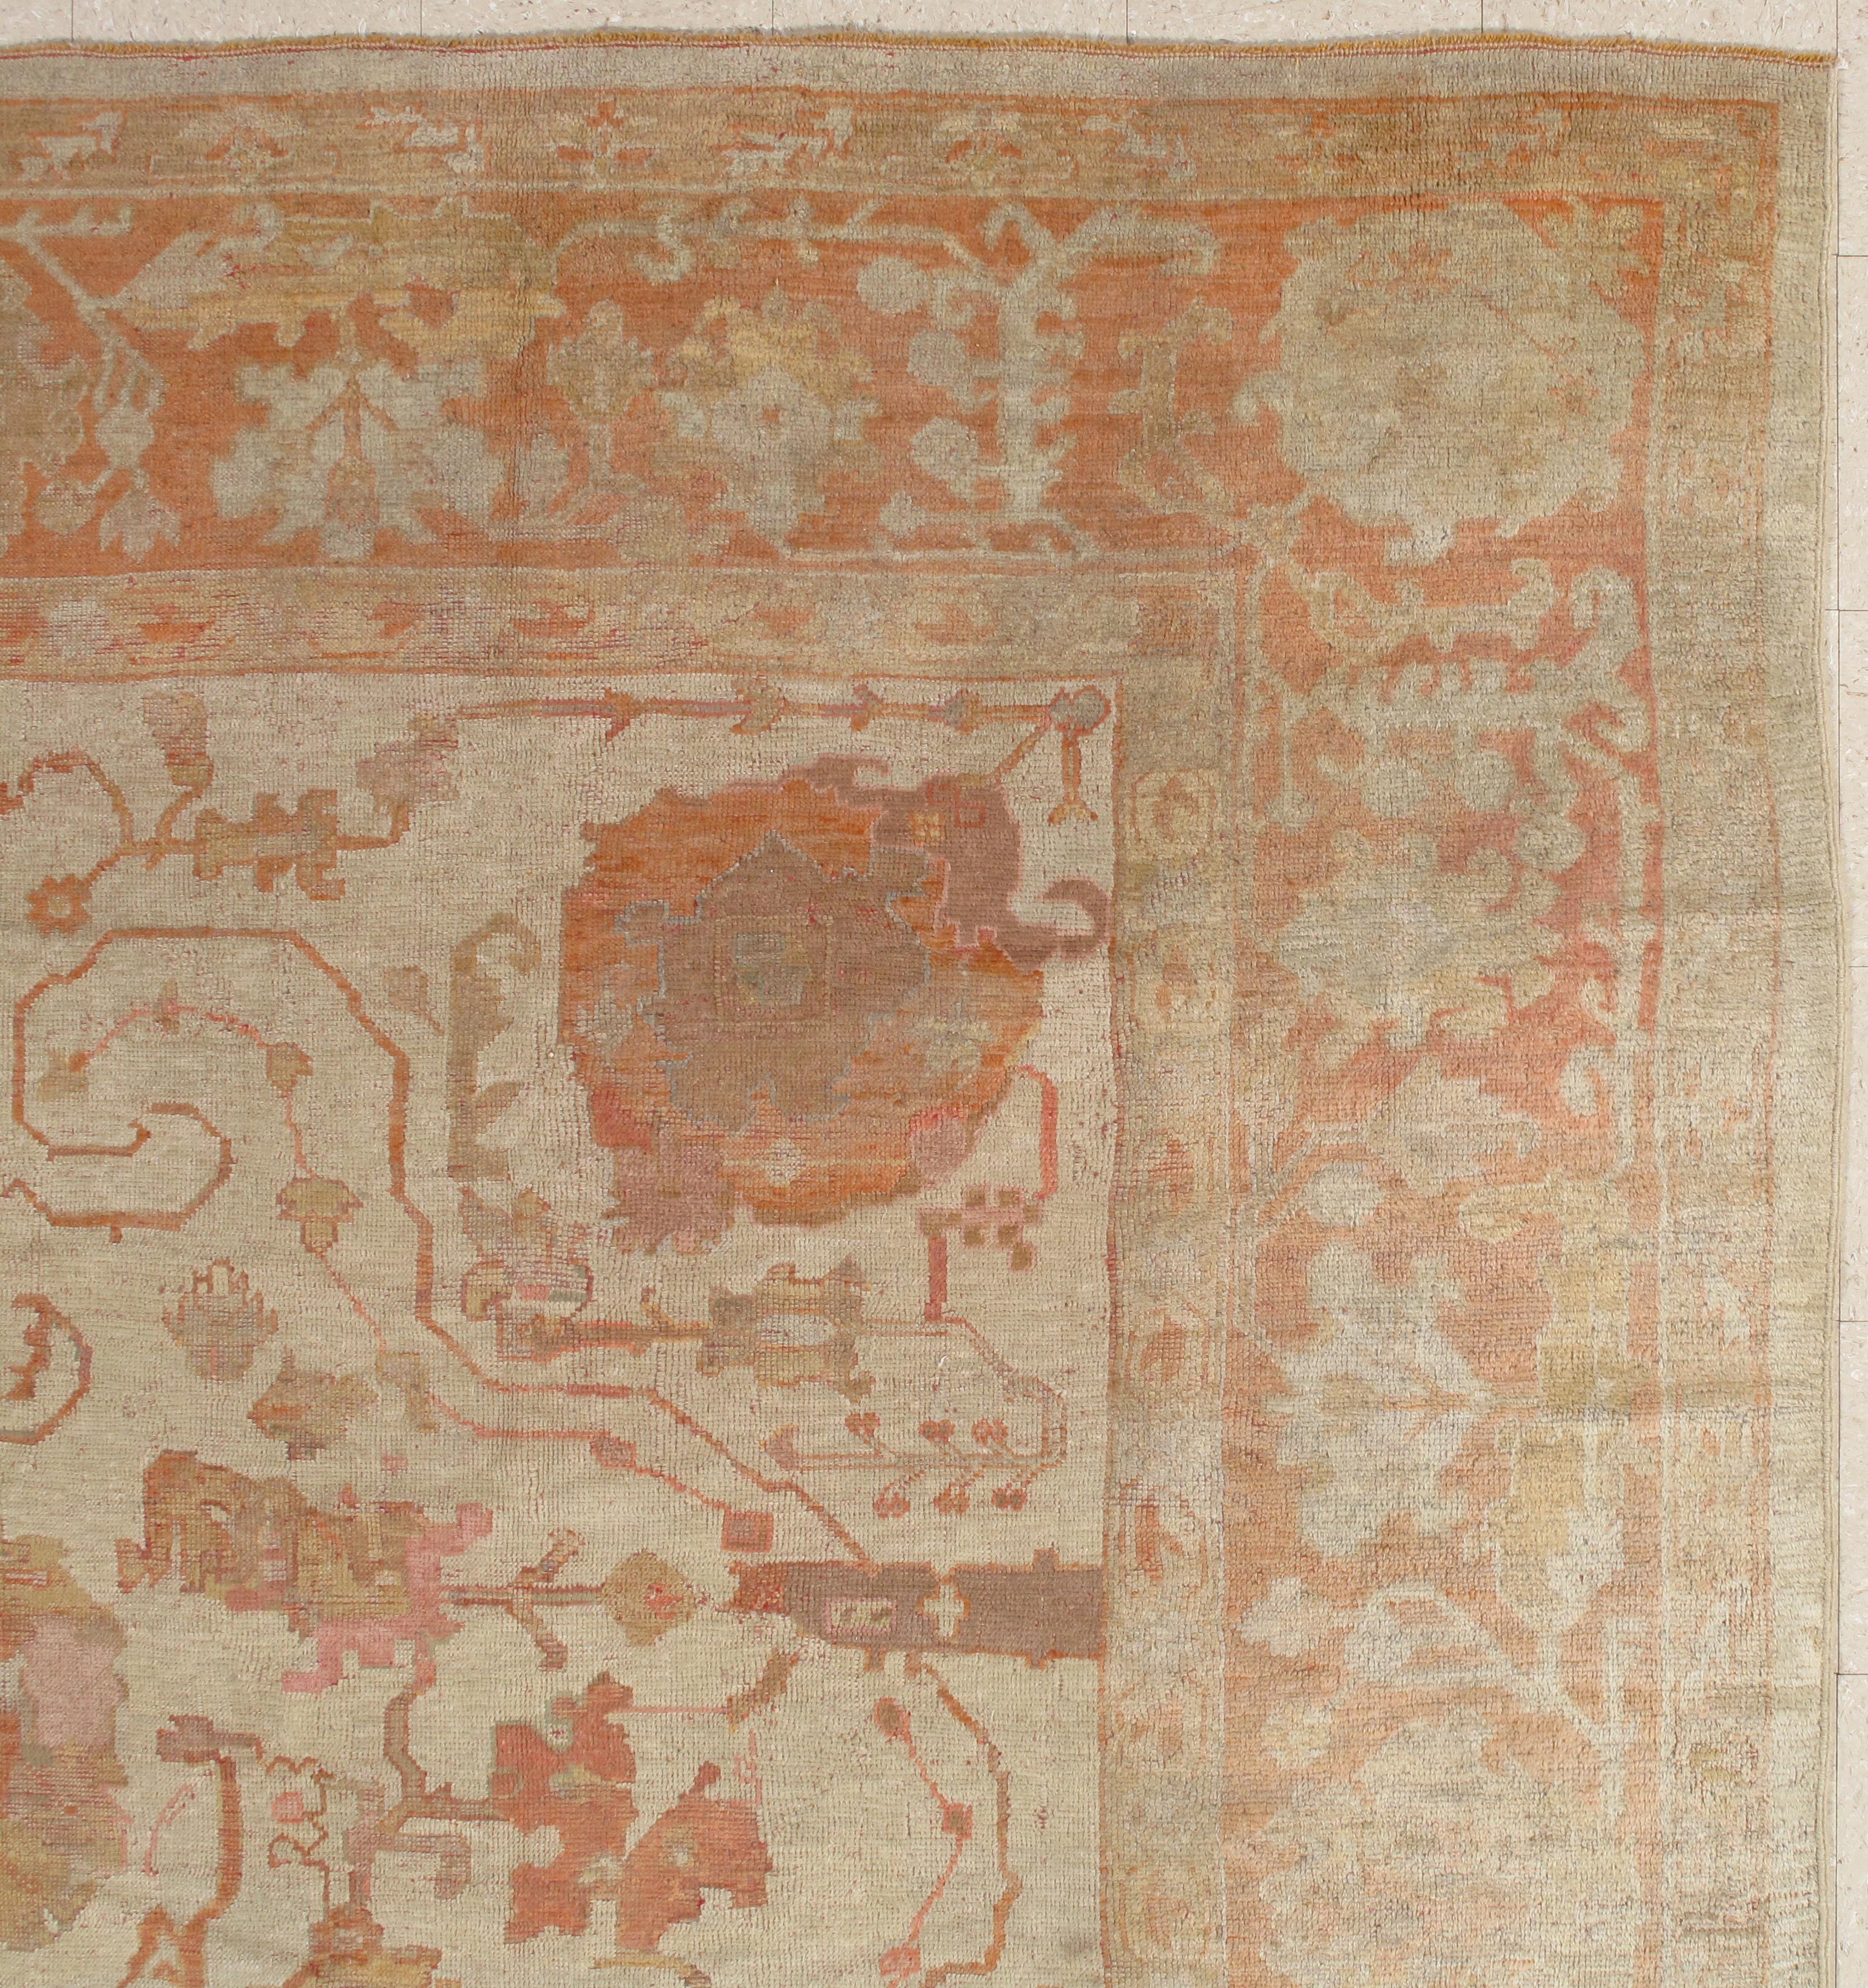 Antique Turkish Oushak Carpet, Handmade Oriental Rug, Beige, Taupe, Shrimp Coral For Sale 6